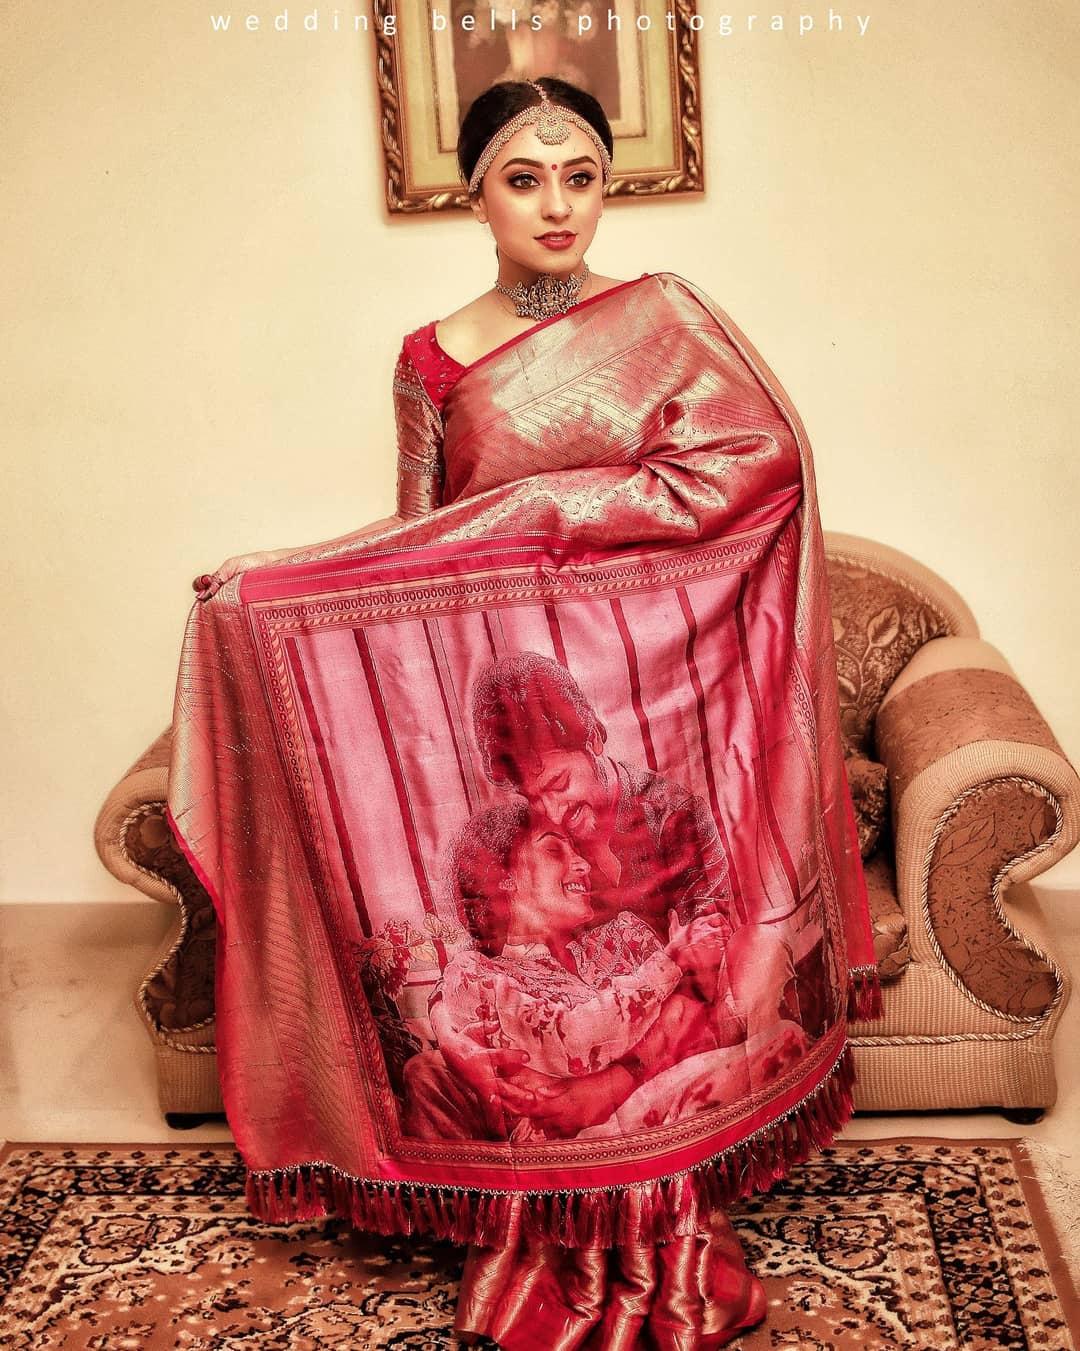 Sadhika Venugopal in wedding saree photoshoot - South Indian Actress